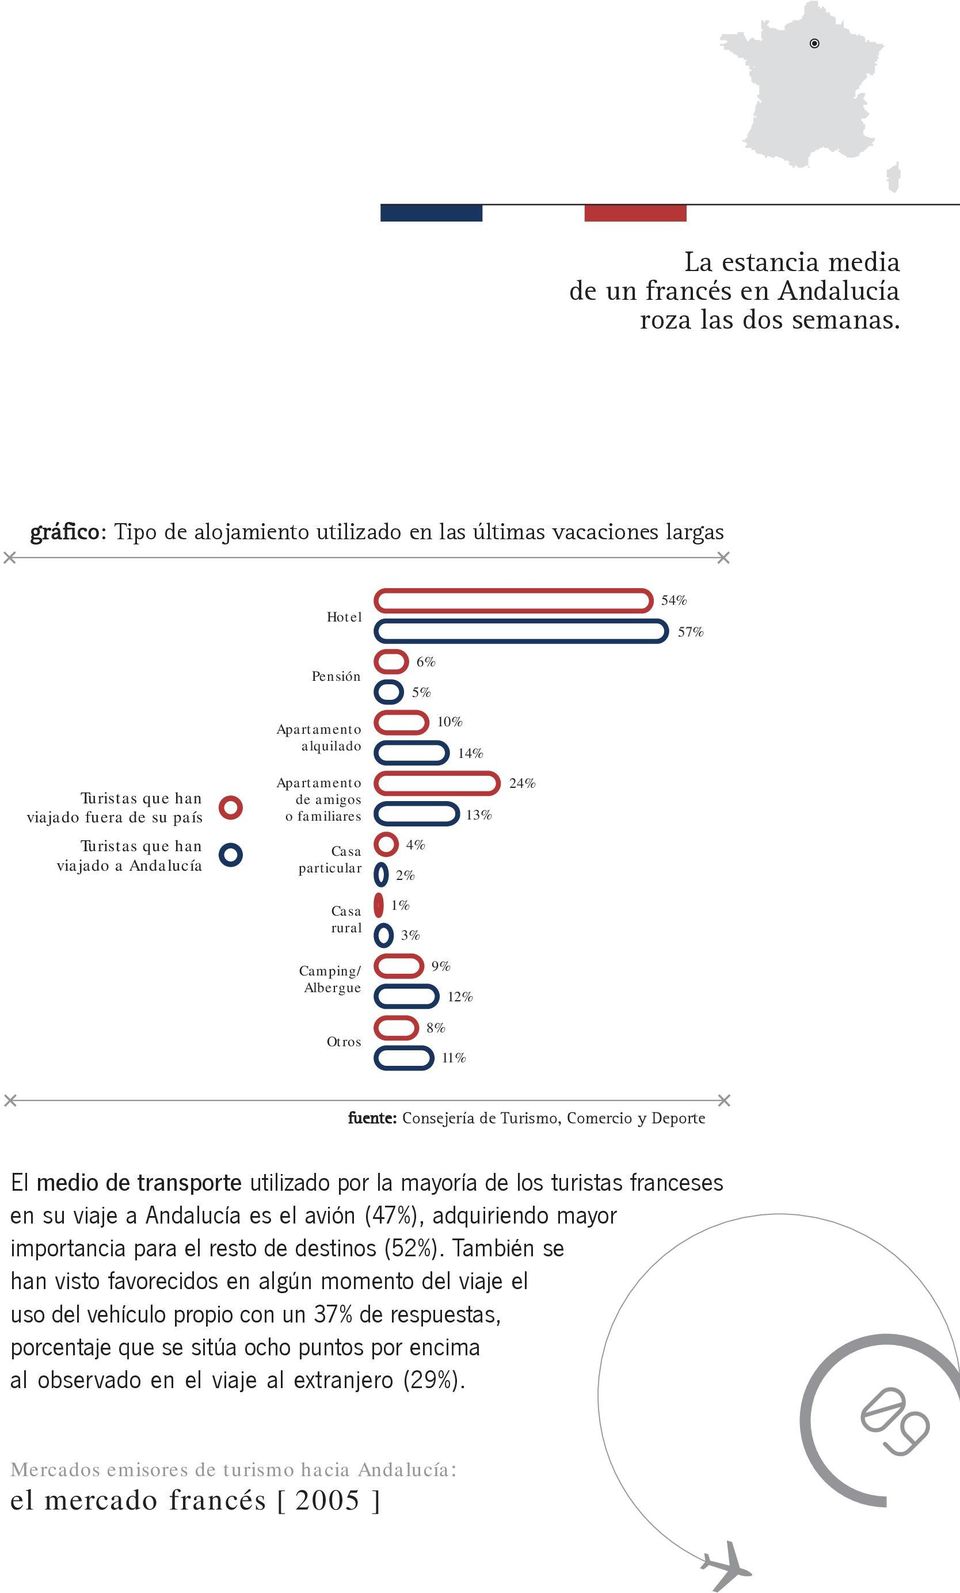 familiares 13% 24% Turistas que han viajado a Andalucía Casa particular 4% 2% Casa rural 1% 3% Camping/ Albergue 9% 12% Otros 8% 11% El medio de transporte utilizado por la mayoría de los